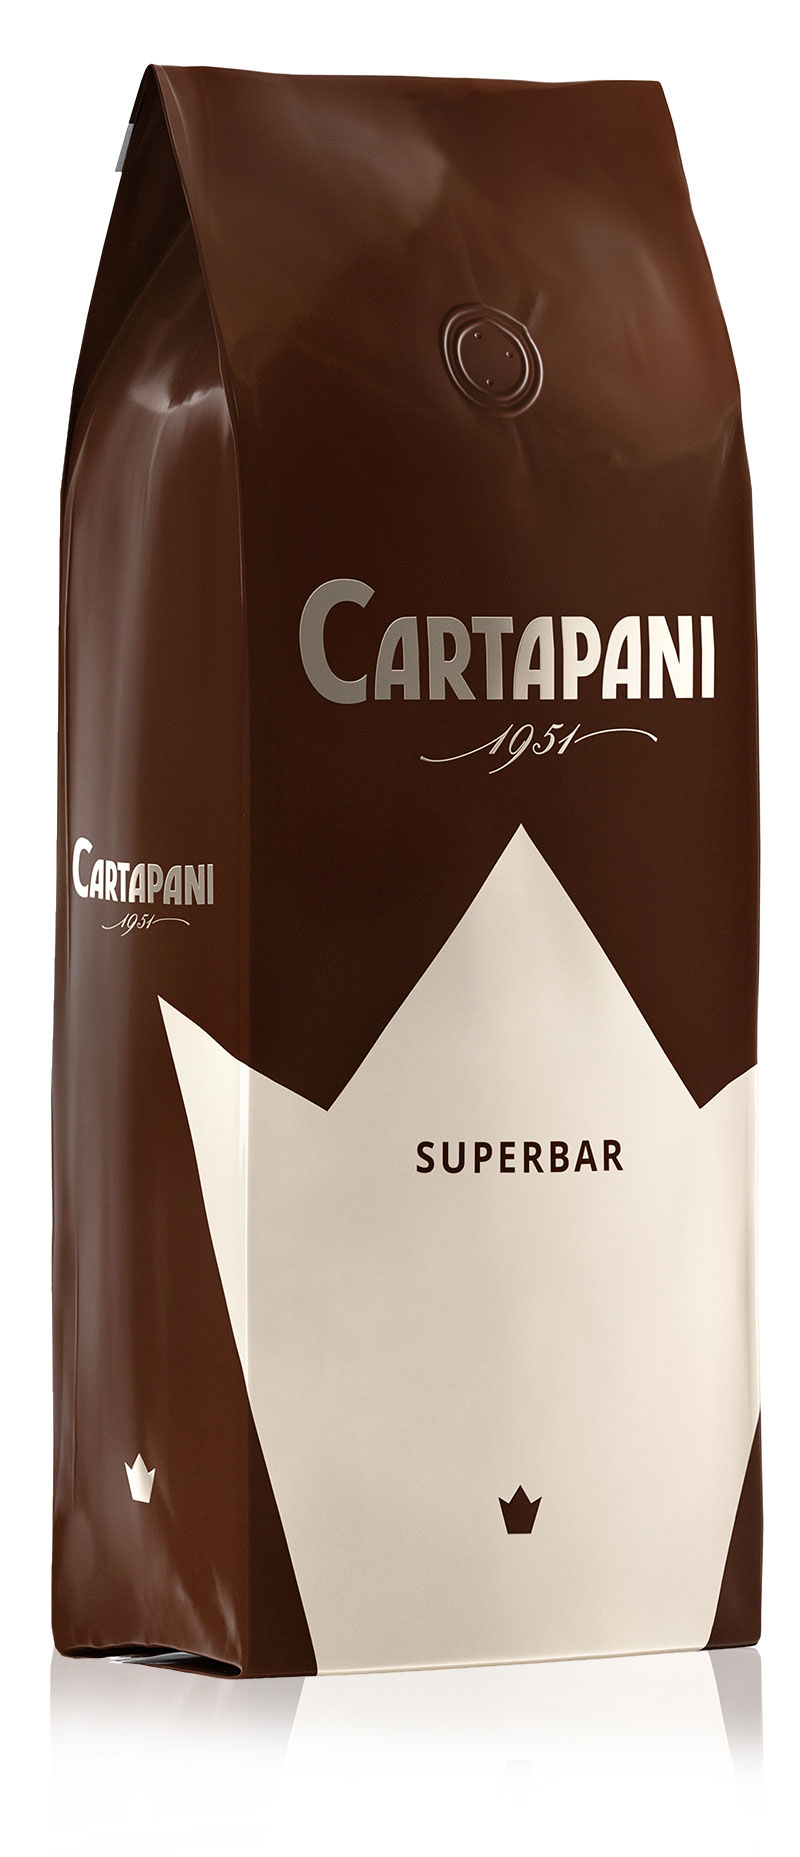 SUPERBAR - Cartapani